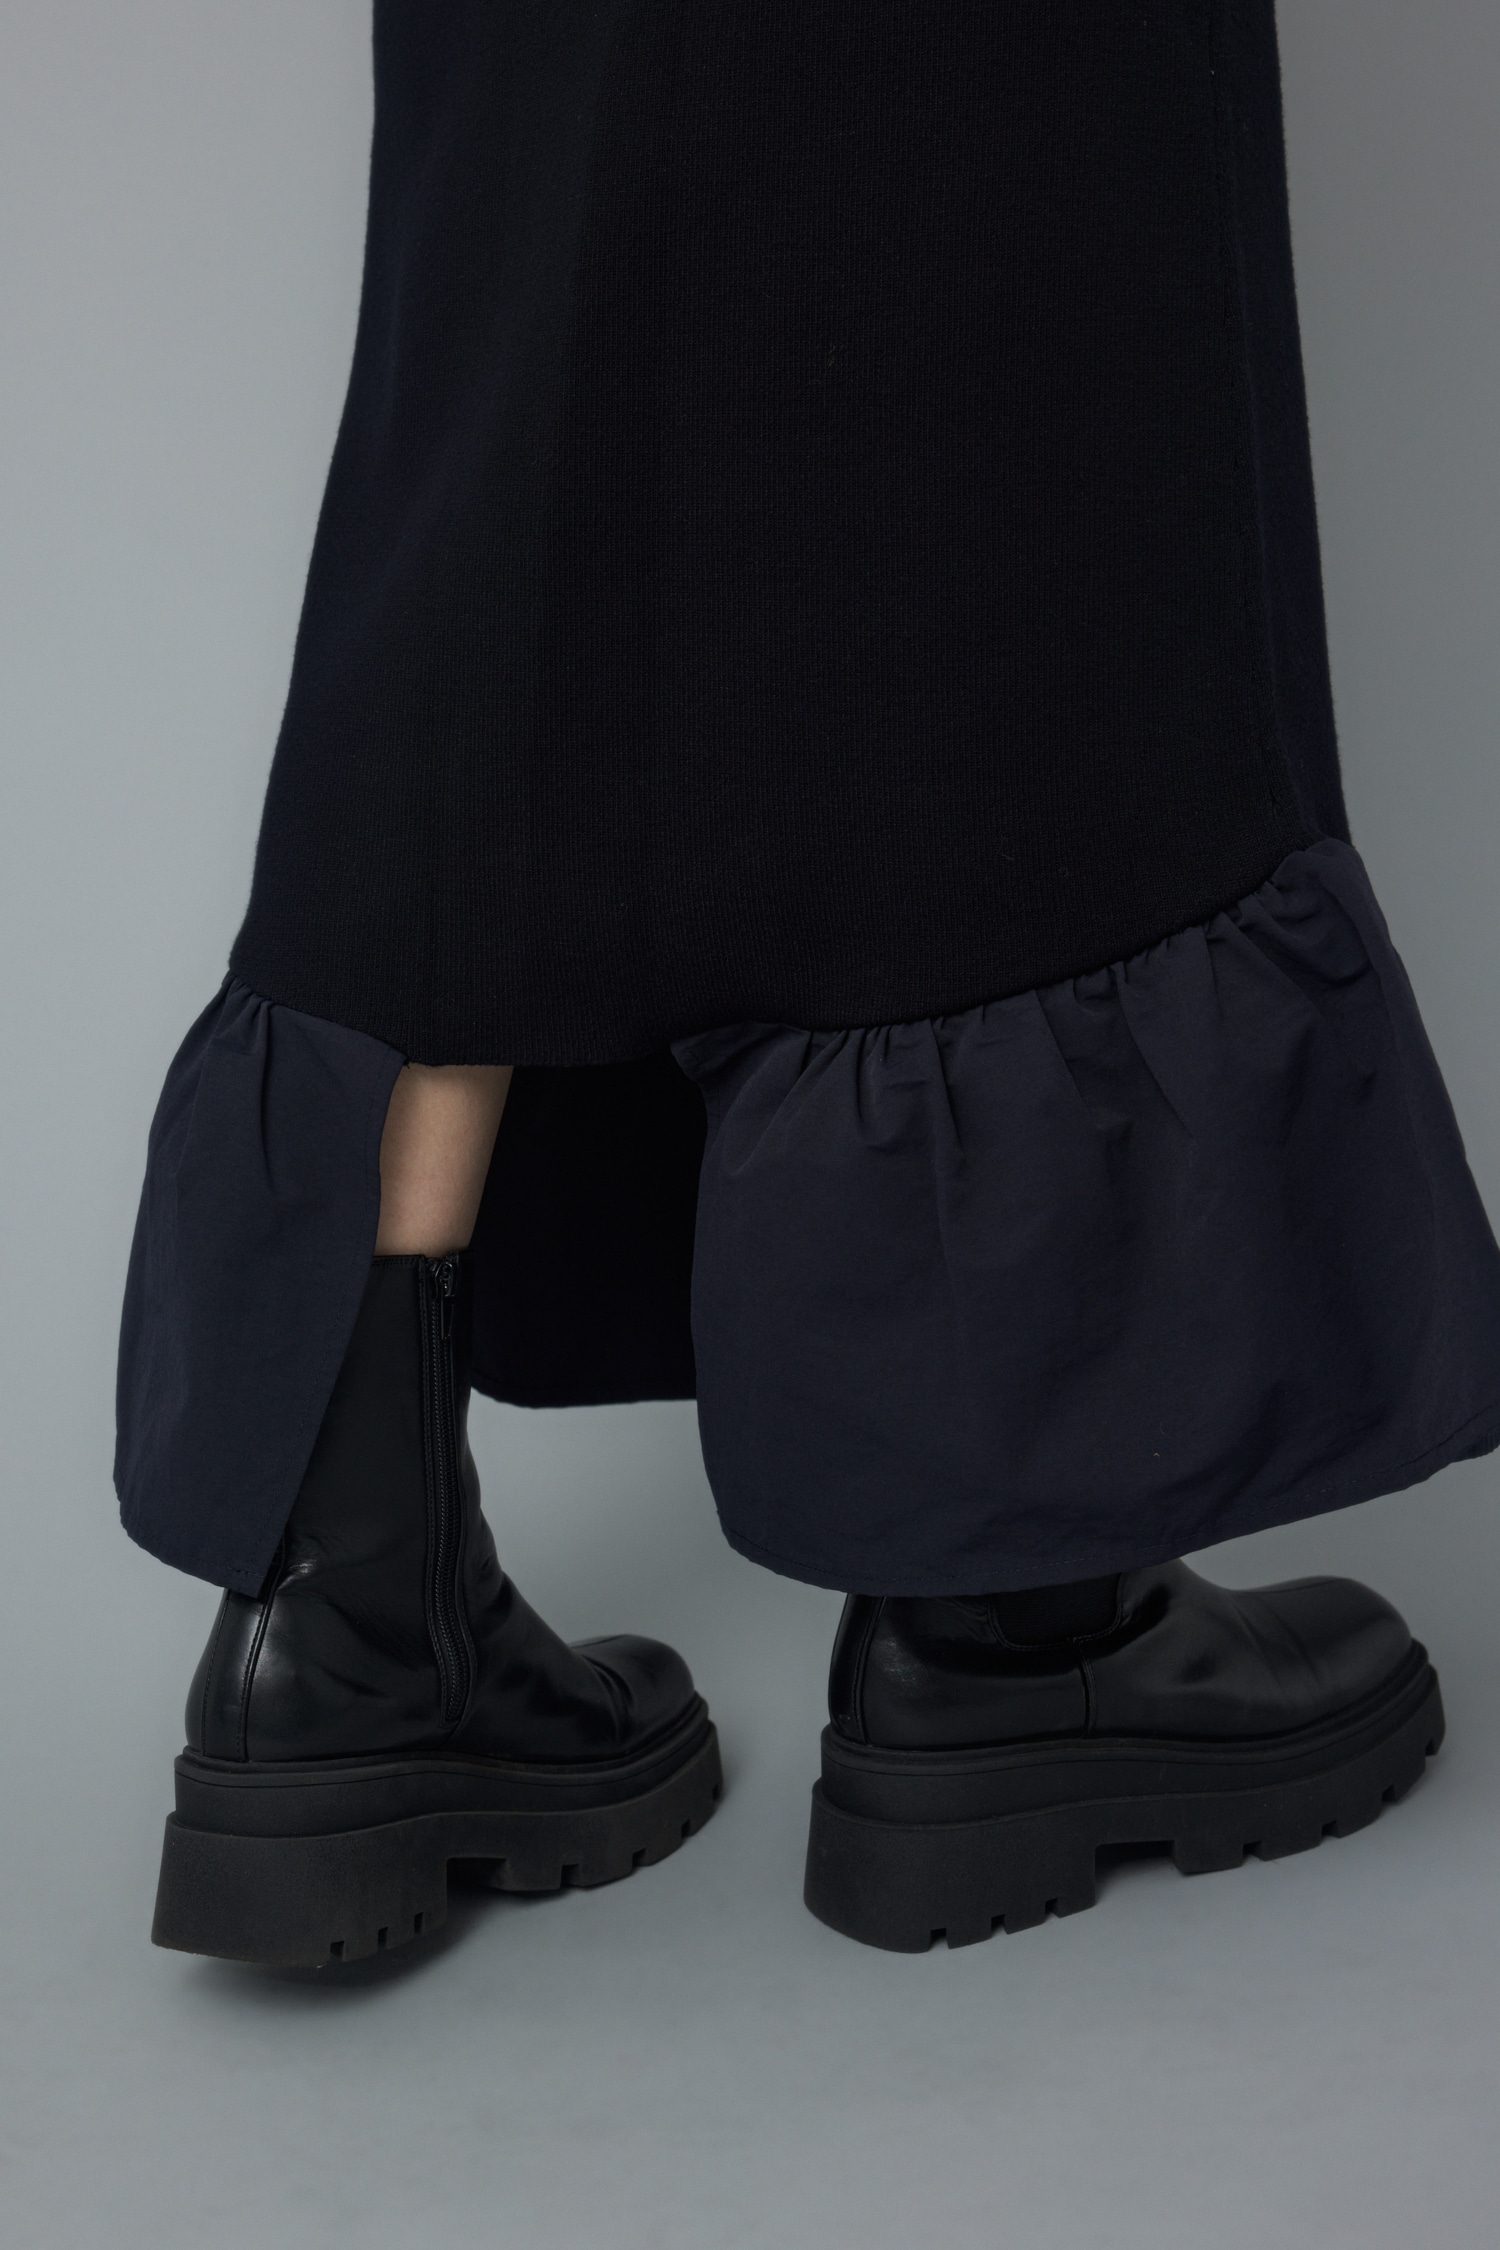 HeRIN.CYE | Knit frill skirt (スカート(ロング) ) |SHEL'TTER WEBSTORE